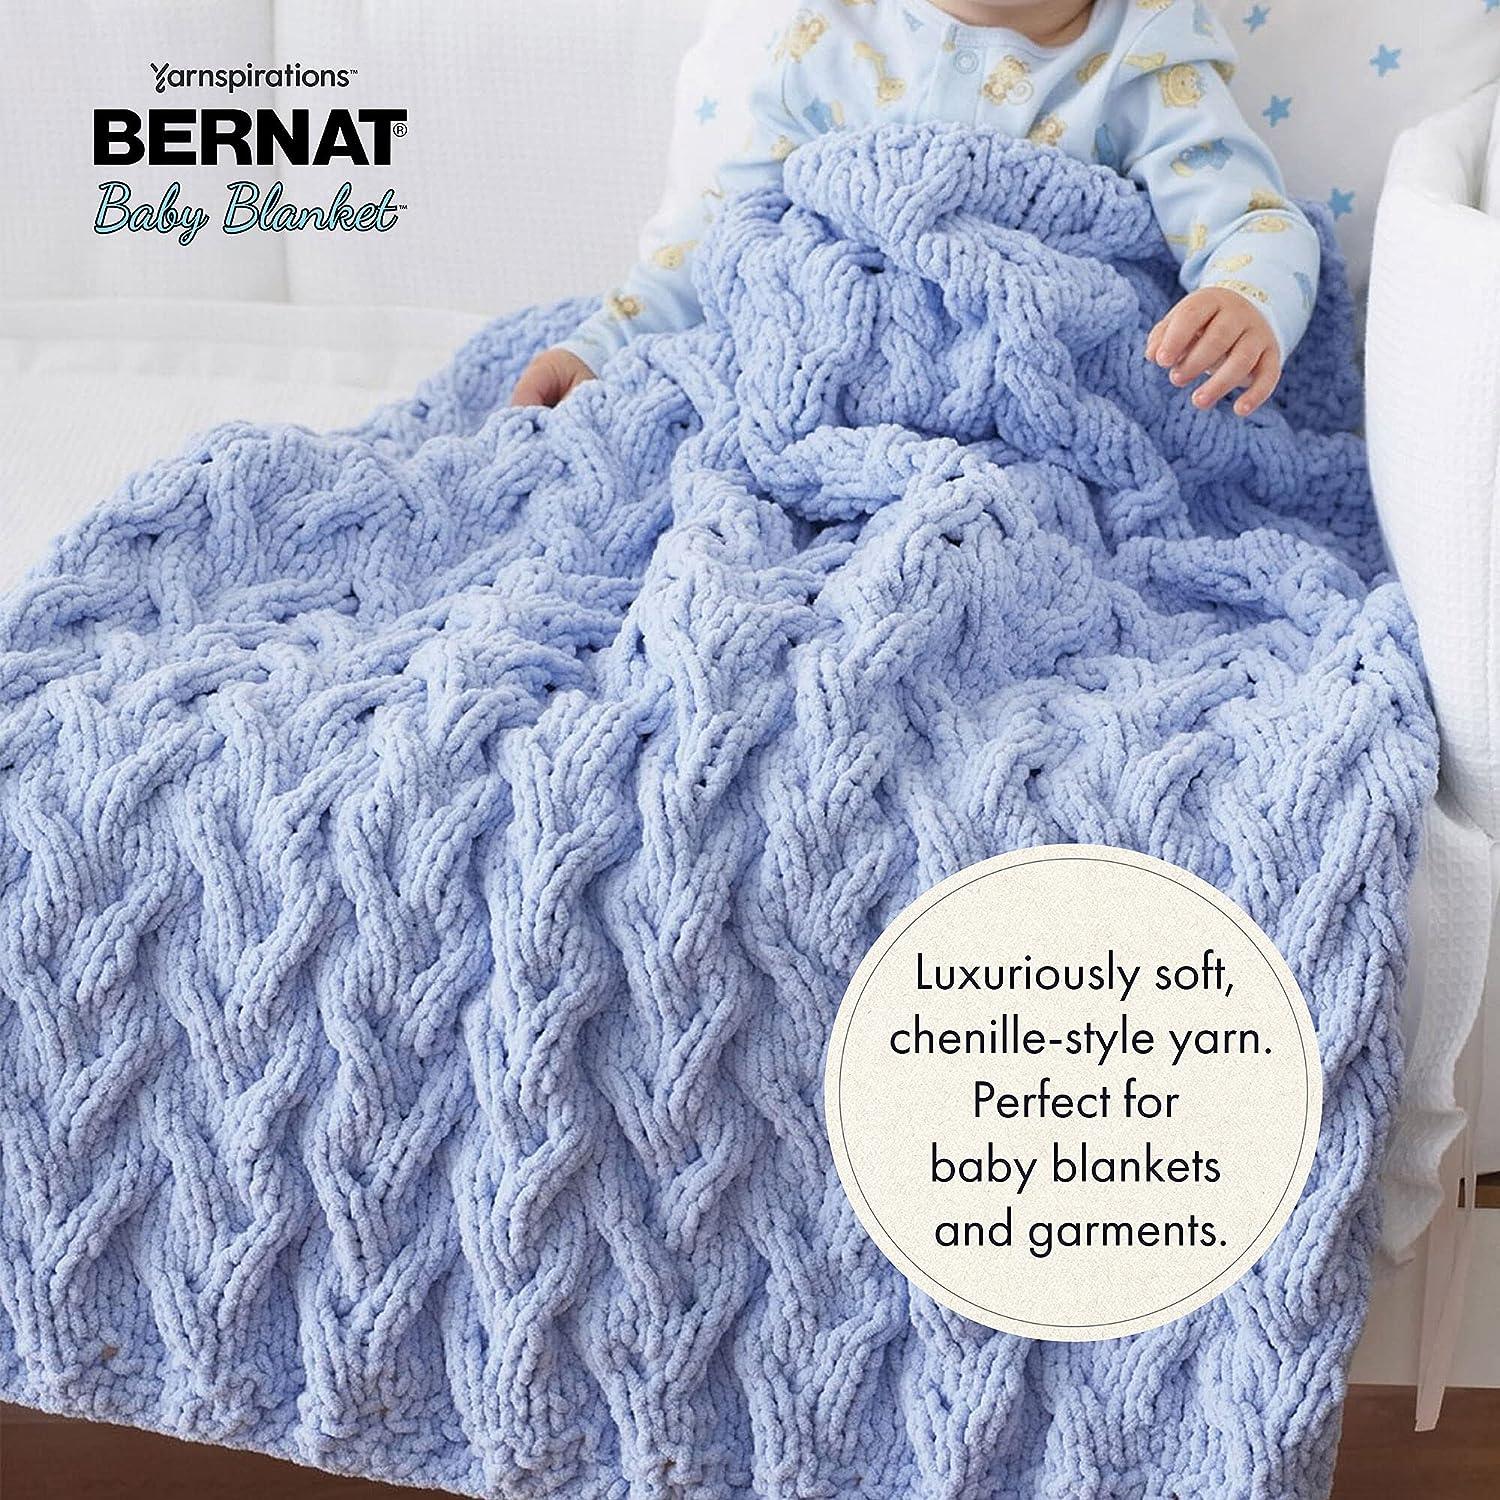 Bernat Blanket Sand Yarn - 2 Pack of 300g/10.5oz - Polyester - 6 Super Bulky - 220 Yards - Knitting/Crochet